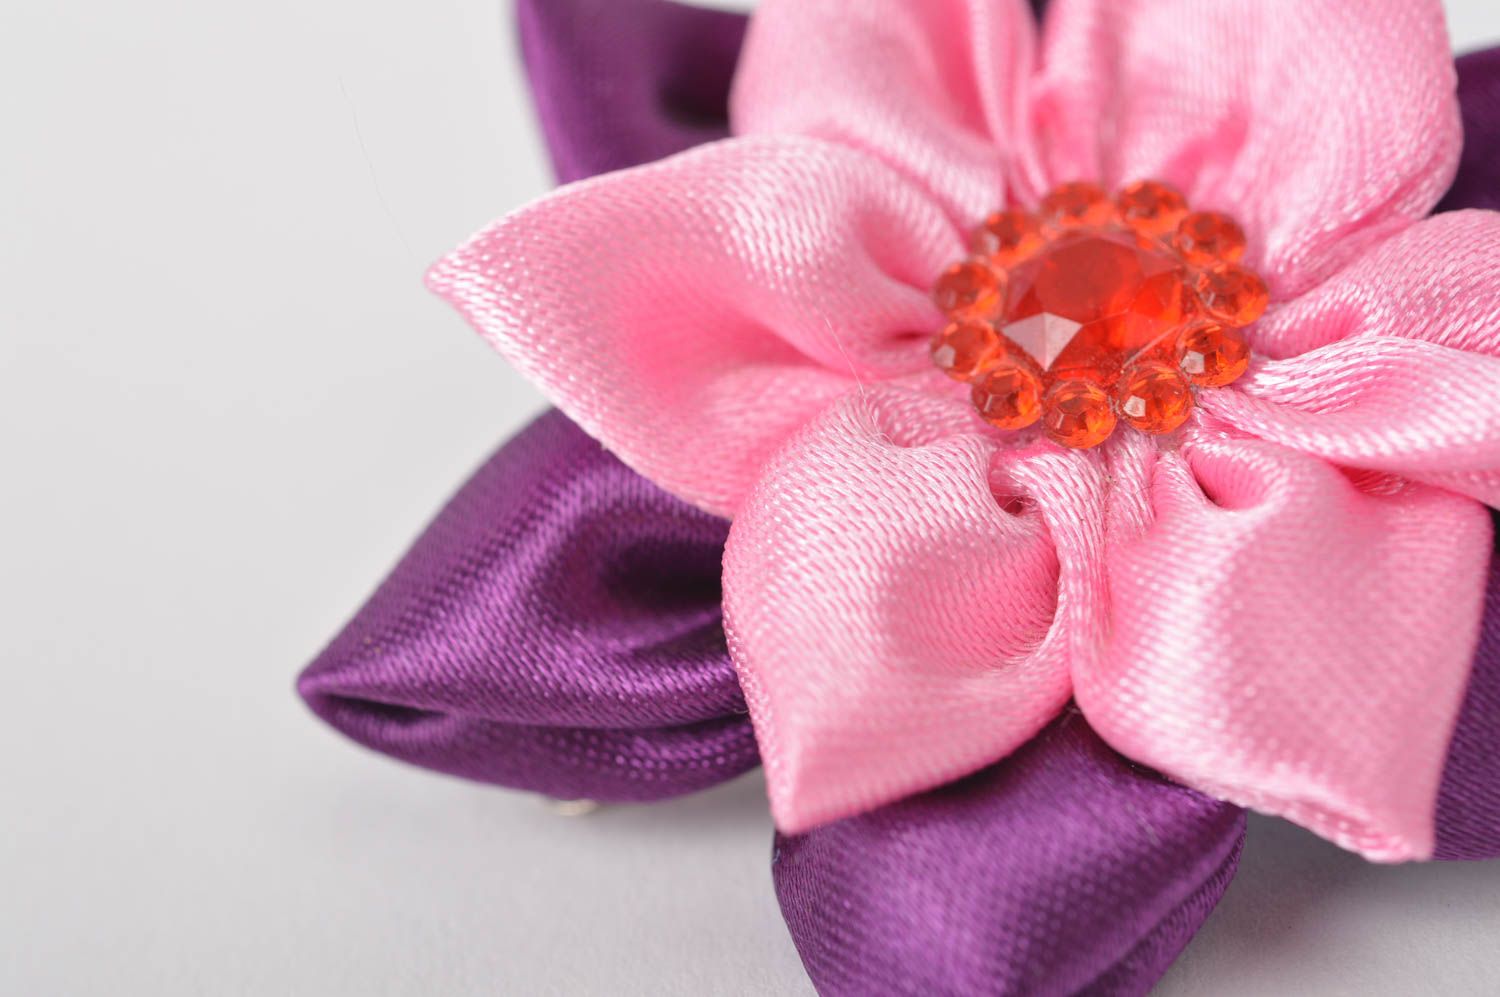 Handmade Mädchen Haarschmuck Haarspange Blume Mode Accessoire schön grell farbig foto 4